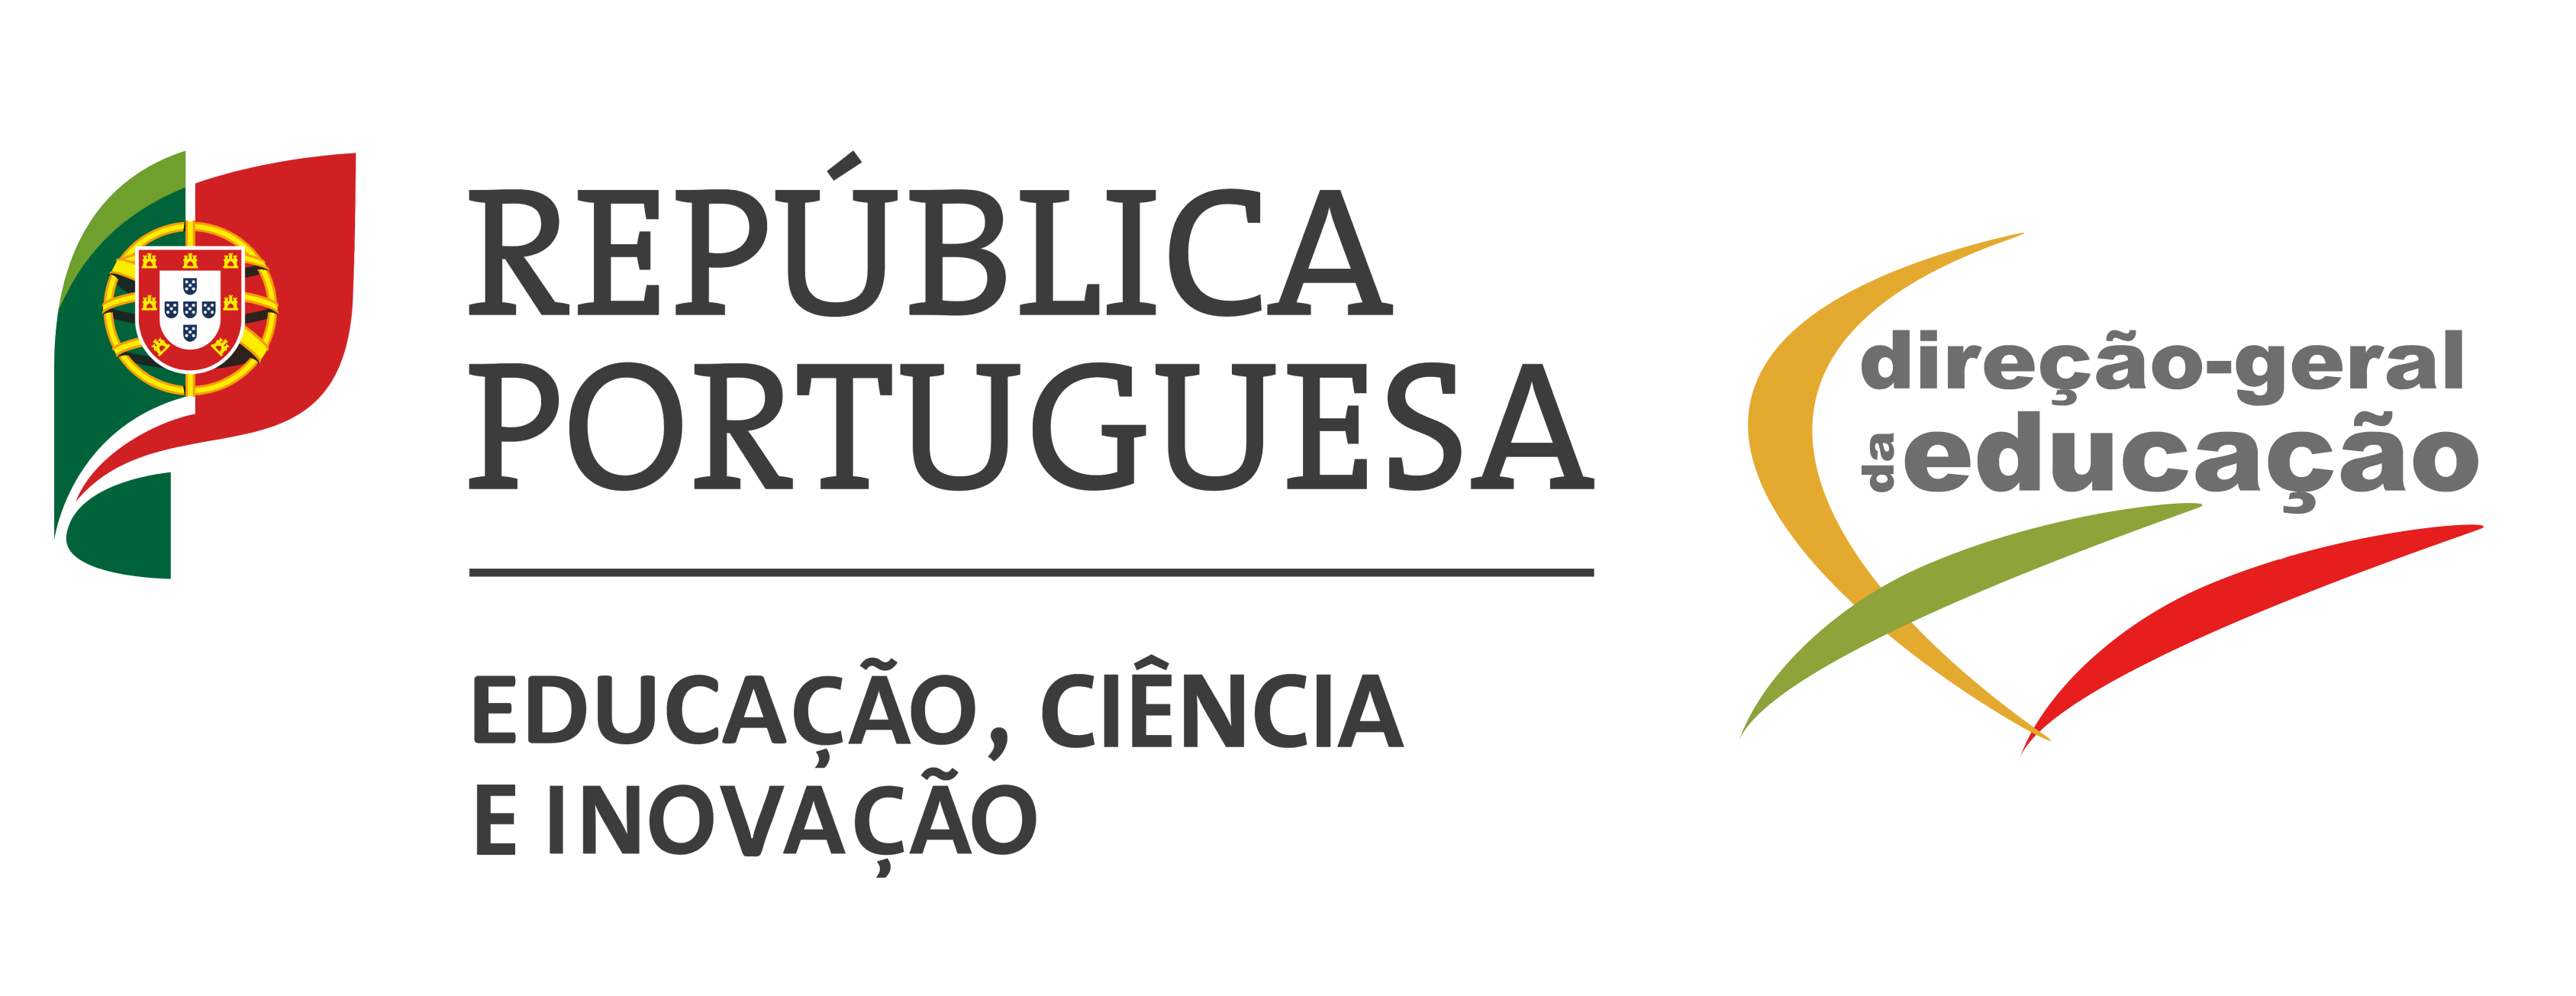 República Portuguesa | Direção-Geral da Educação (abre num novo separador)